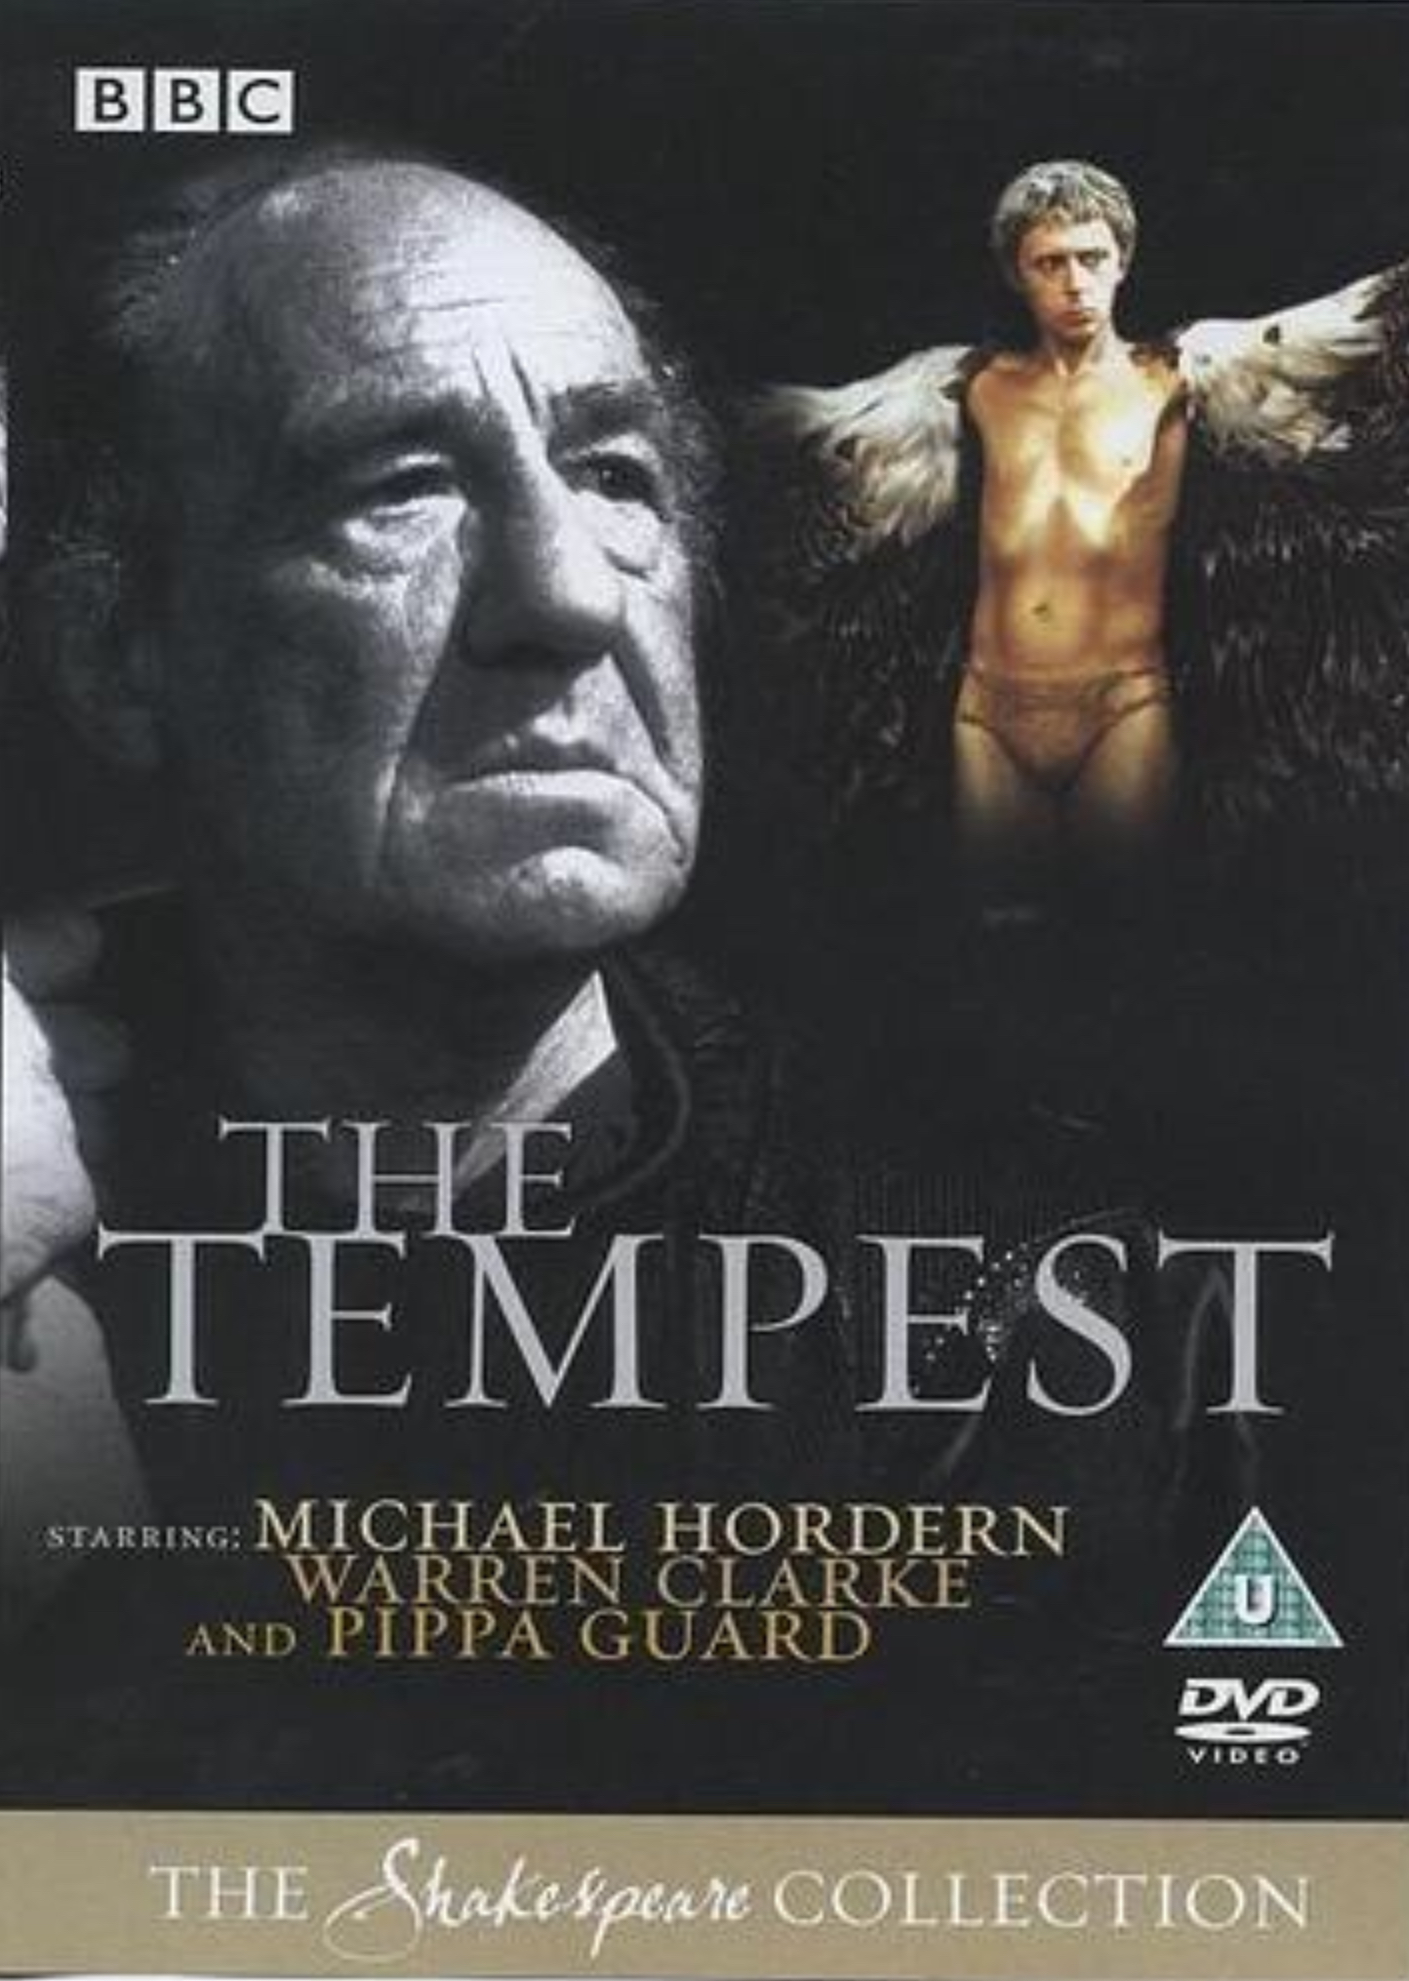 The Tempest (1980) starring Michael Hordern on DVD on DVD